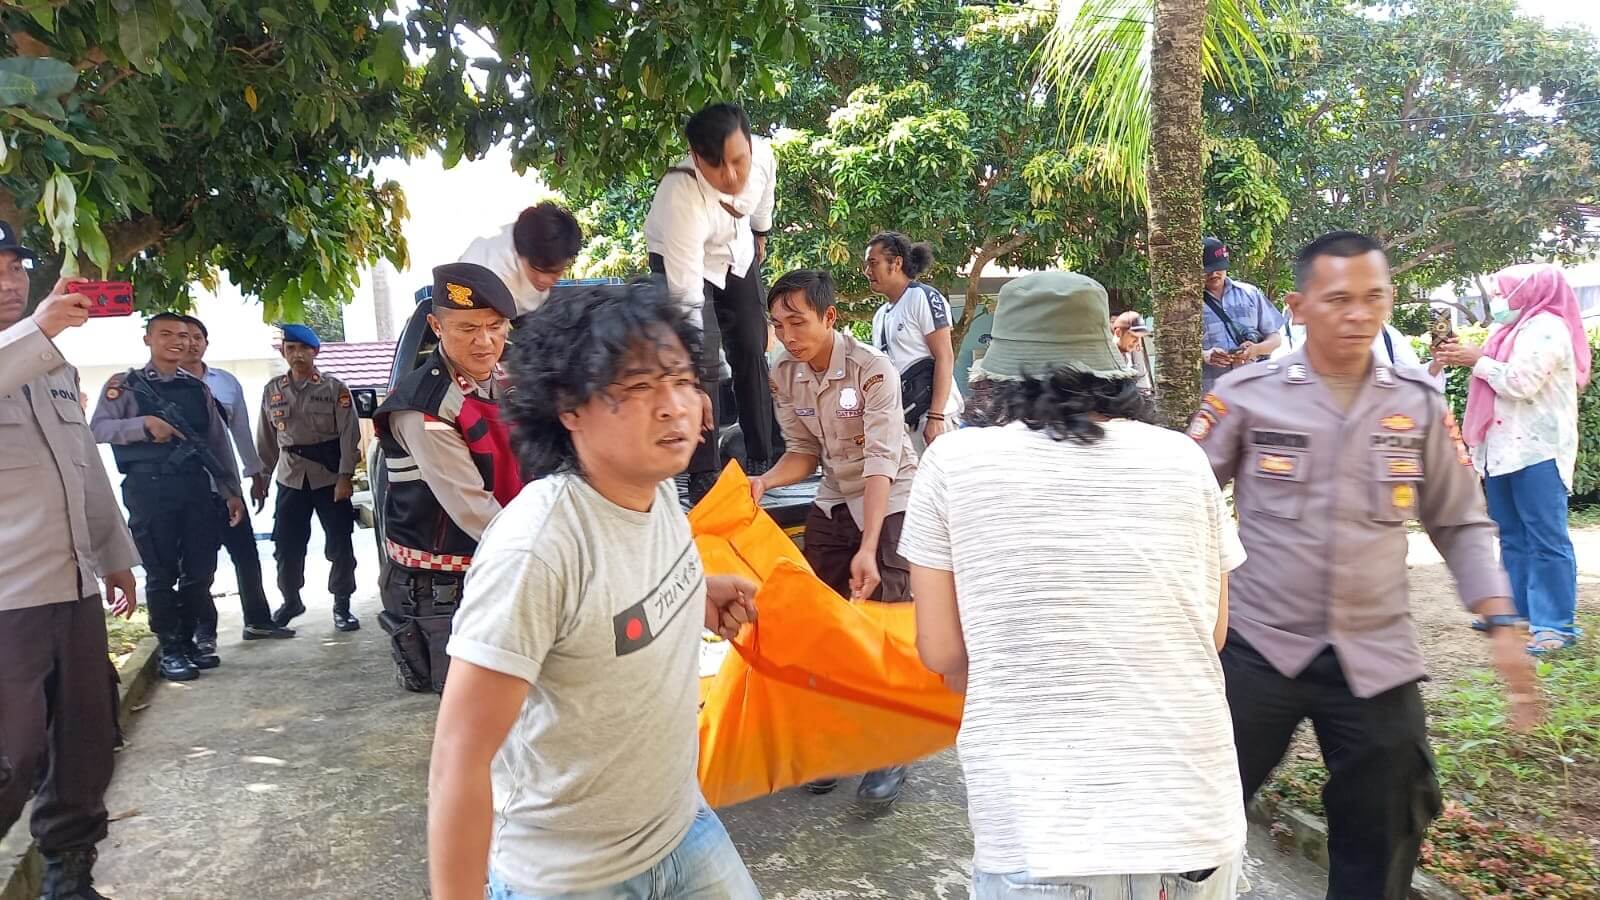 TERUNGKAP! Ini Akar Masalah Konflik Sawah yang Menewaskan 3 Petani Bengkulu Selatan, Polisi Sita Senapan Angin